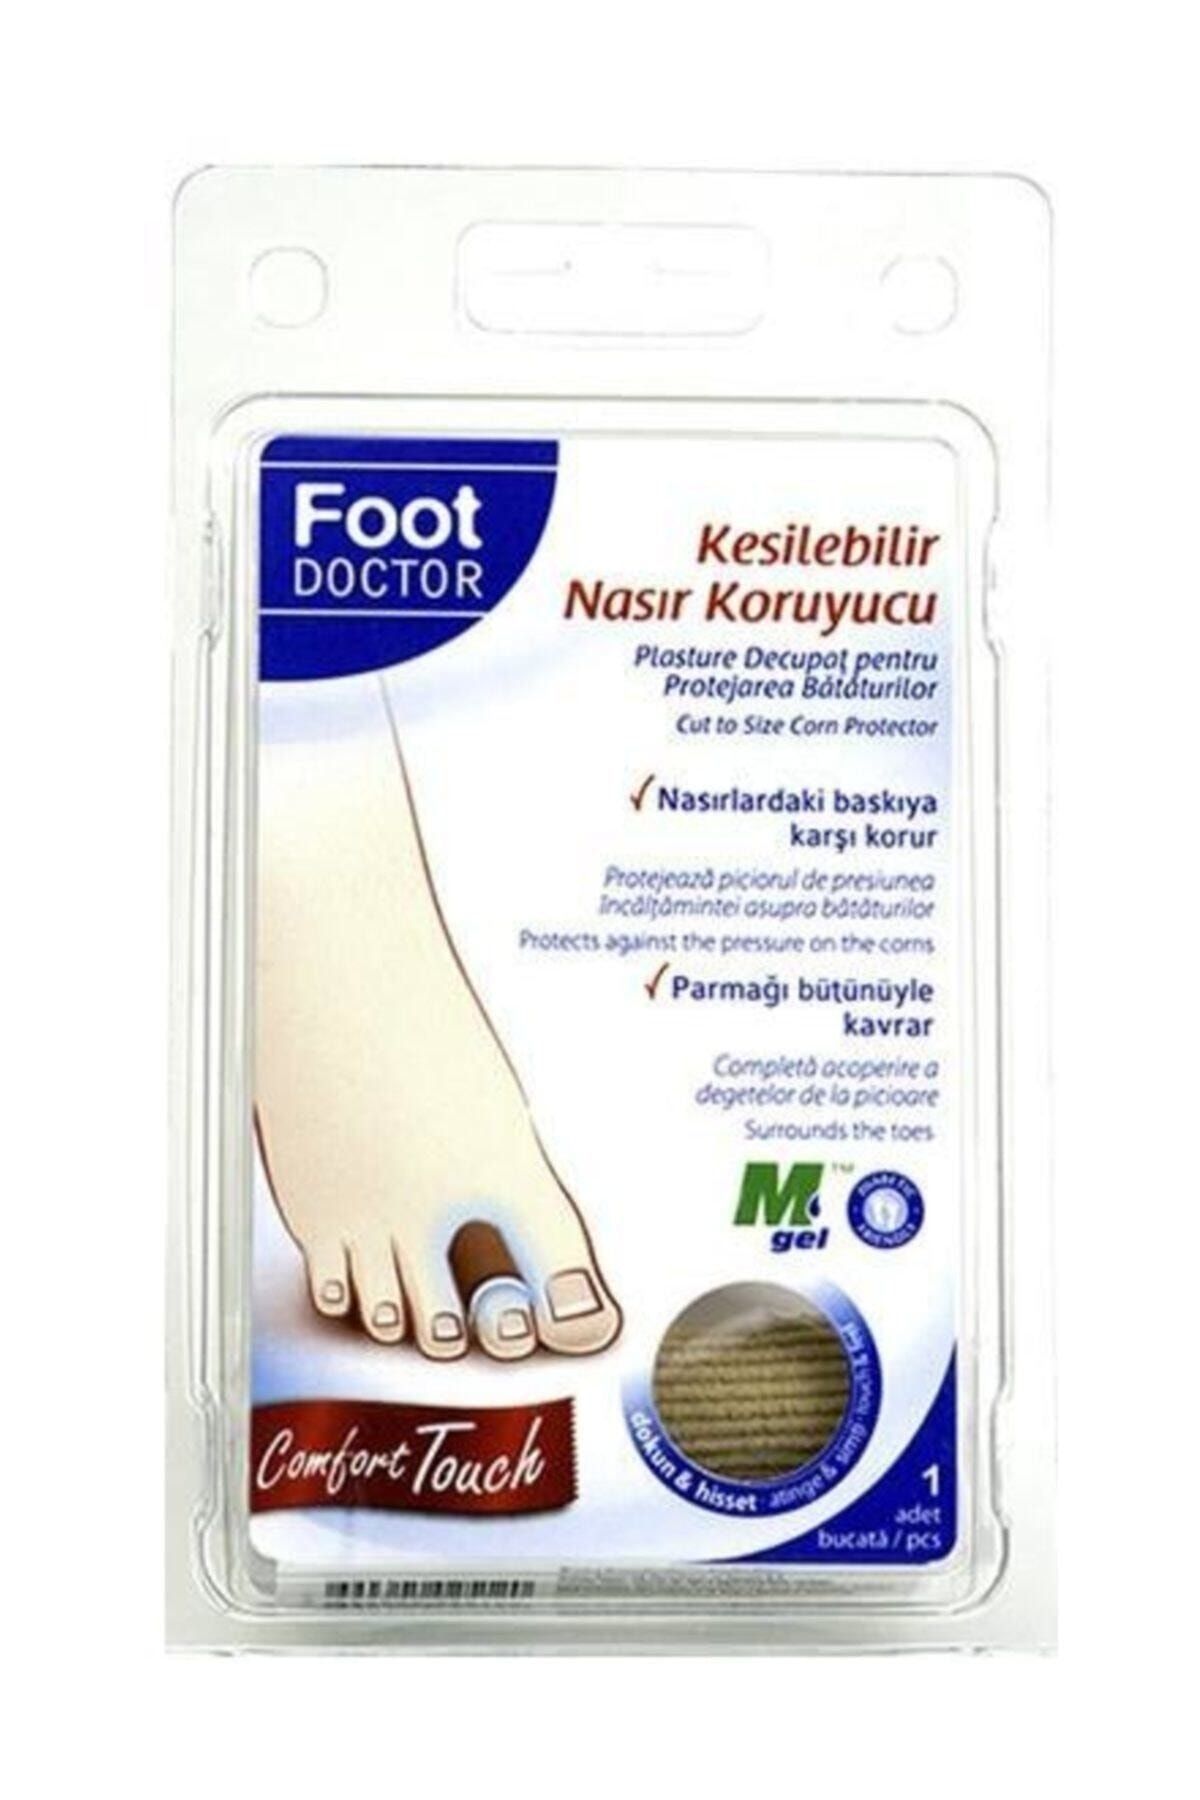 foot doctor Kesilebilir Nasır Koruyucu Ped